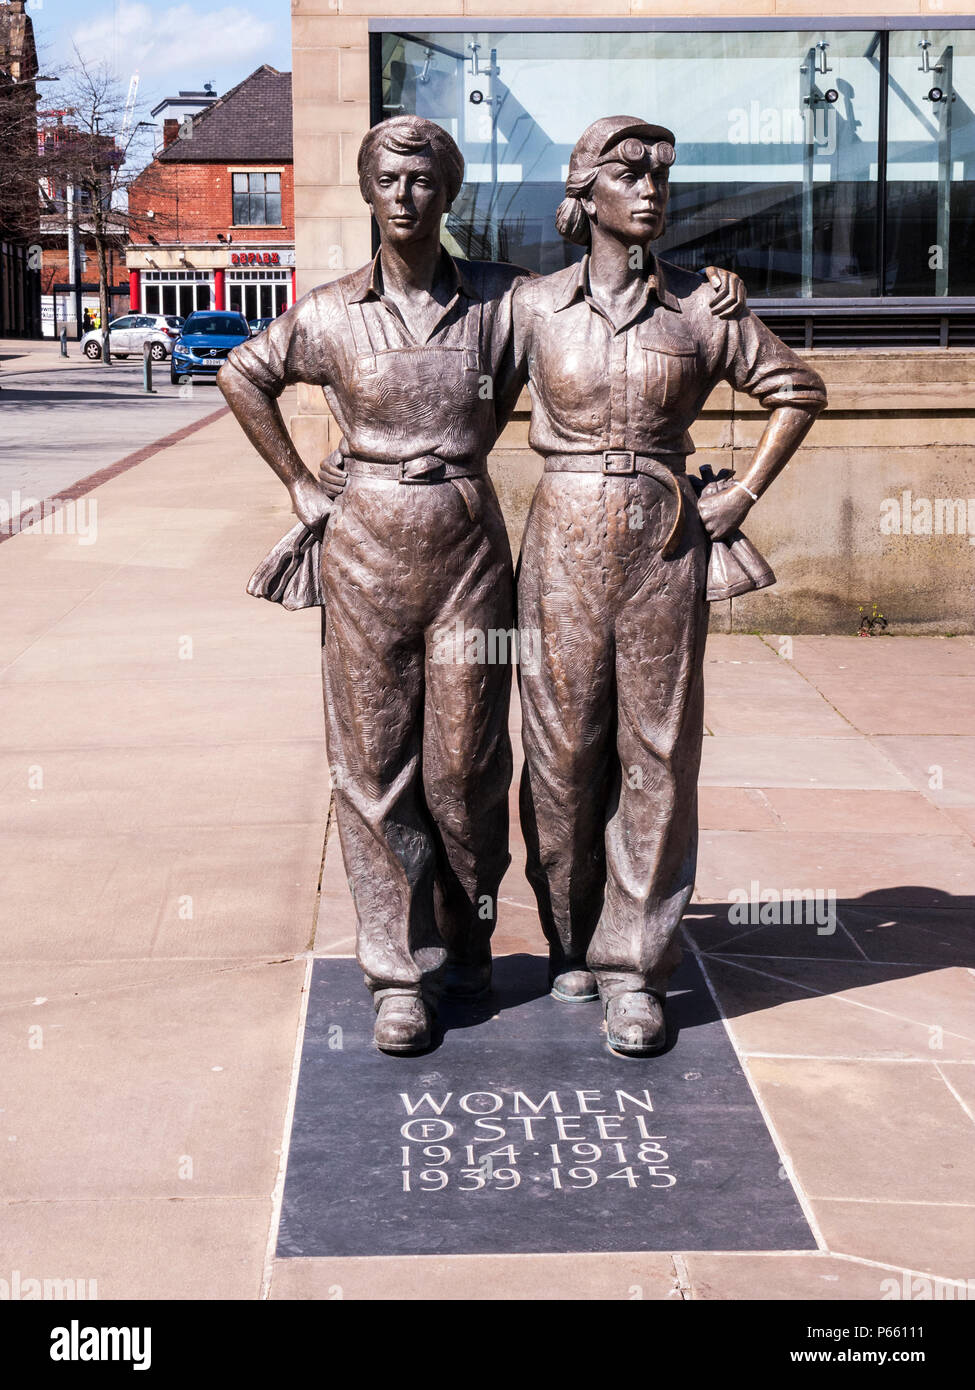 Les femmes d'acier, sculpture en bronze, commémorant les femmes de Sheffield qui a travaillé dans l'industrie de l'acier pendant la PREMIÈRE GUERRE MONDIALE ET LA DEUXIÈME GUERRE MONDIALE Banque D'Images